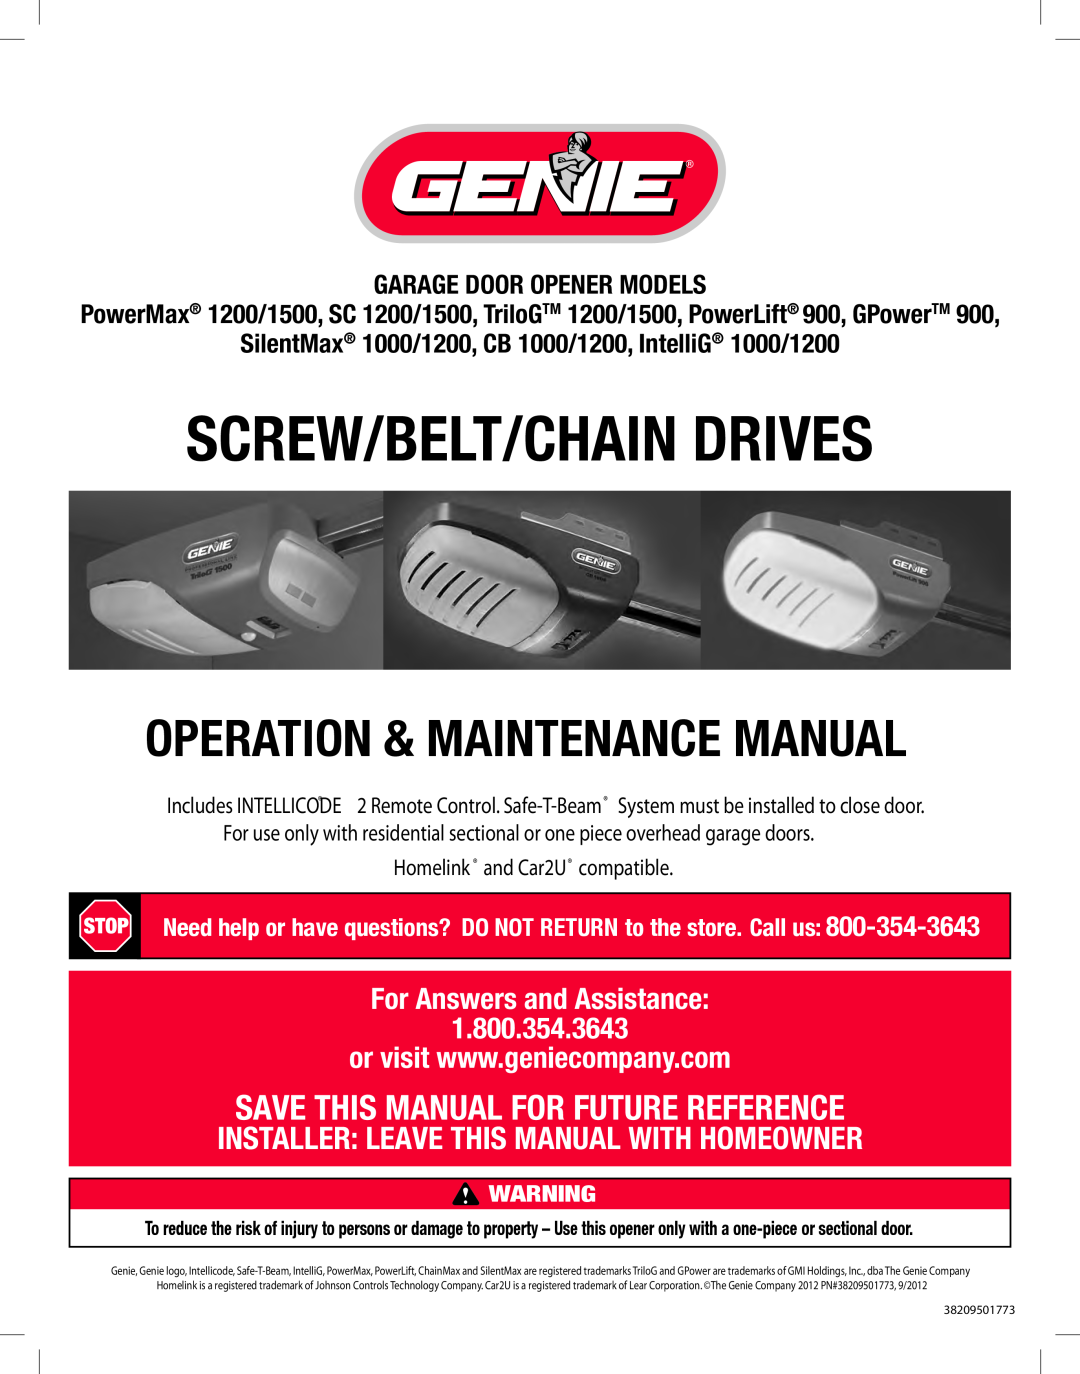 Genie TRILOG 1200/1500, GPOWER 900 manual Garage Door Opener Models, SilentMax 1000/1200, CB 1000/1200, IntelliG 1000/1200 